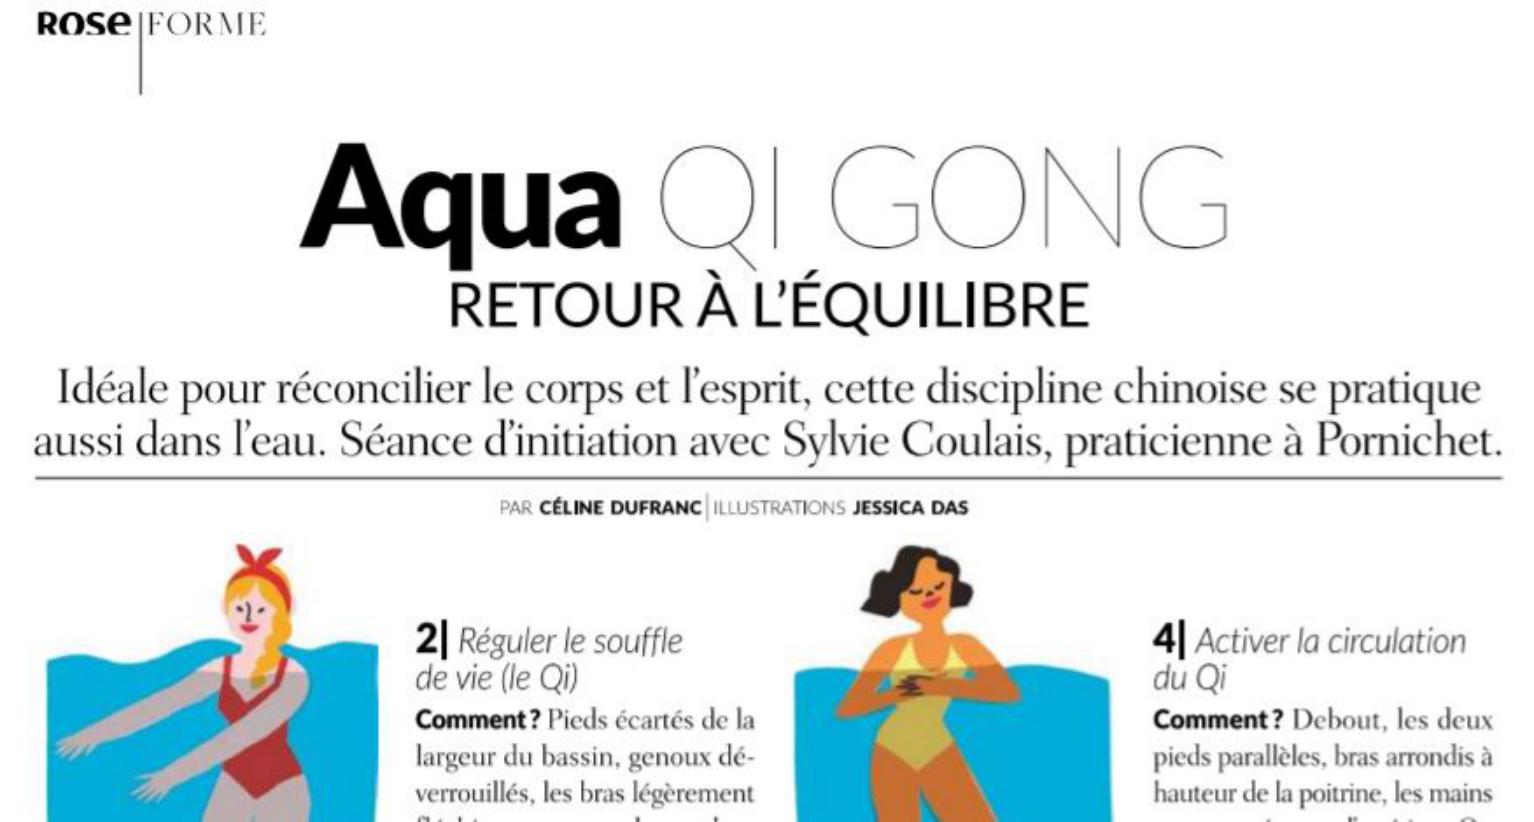 Voir l'article sur L'Aqua QI GONG n° 18 de Rose magazine printemps-été 2020